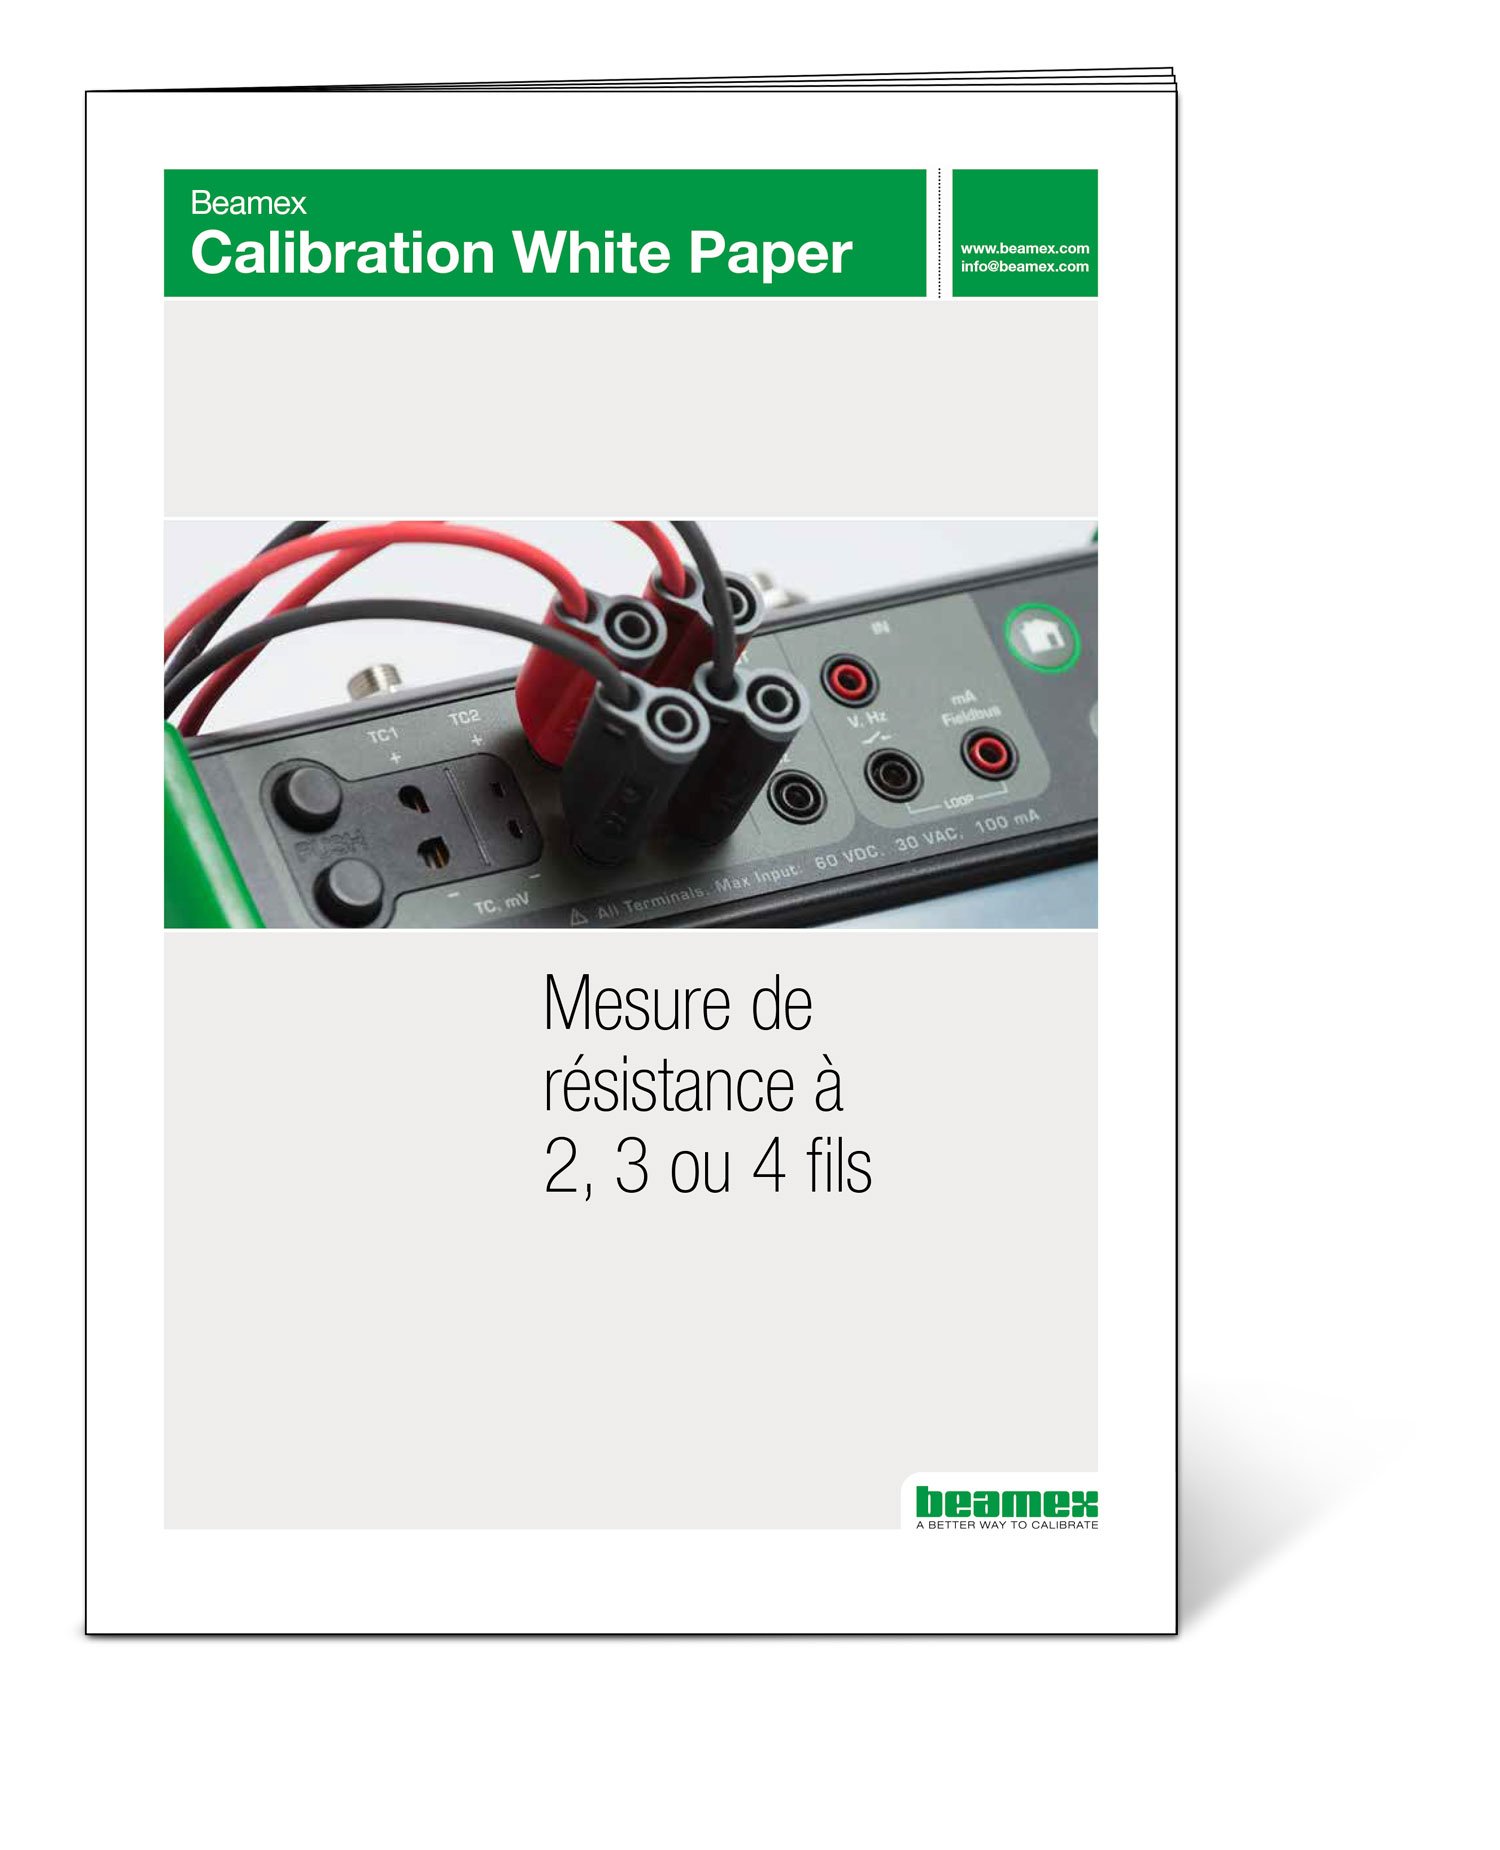 Beamex-White-Paper-Resistance-measurement-1500px-v1-FRA